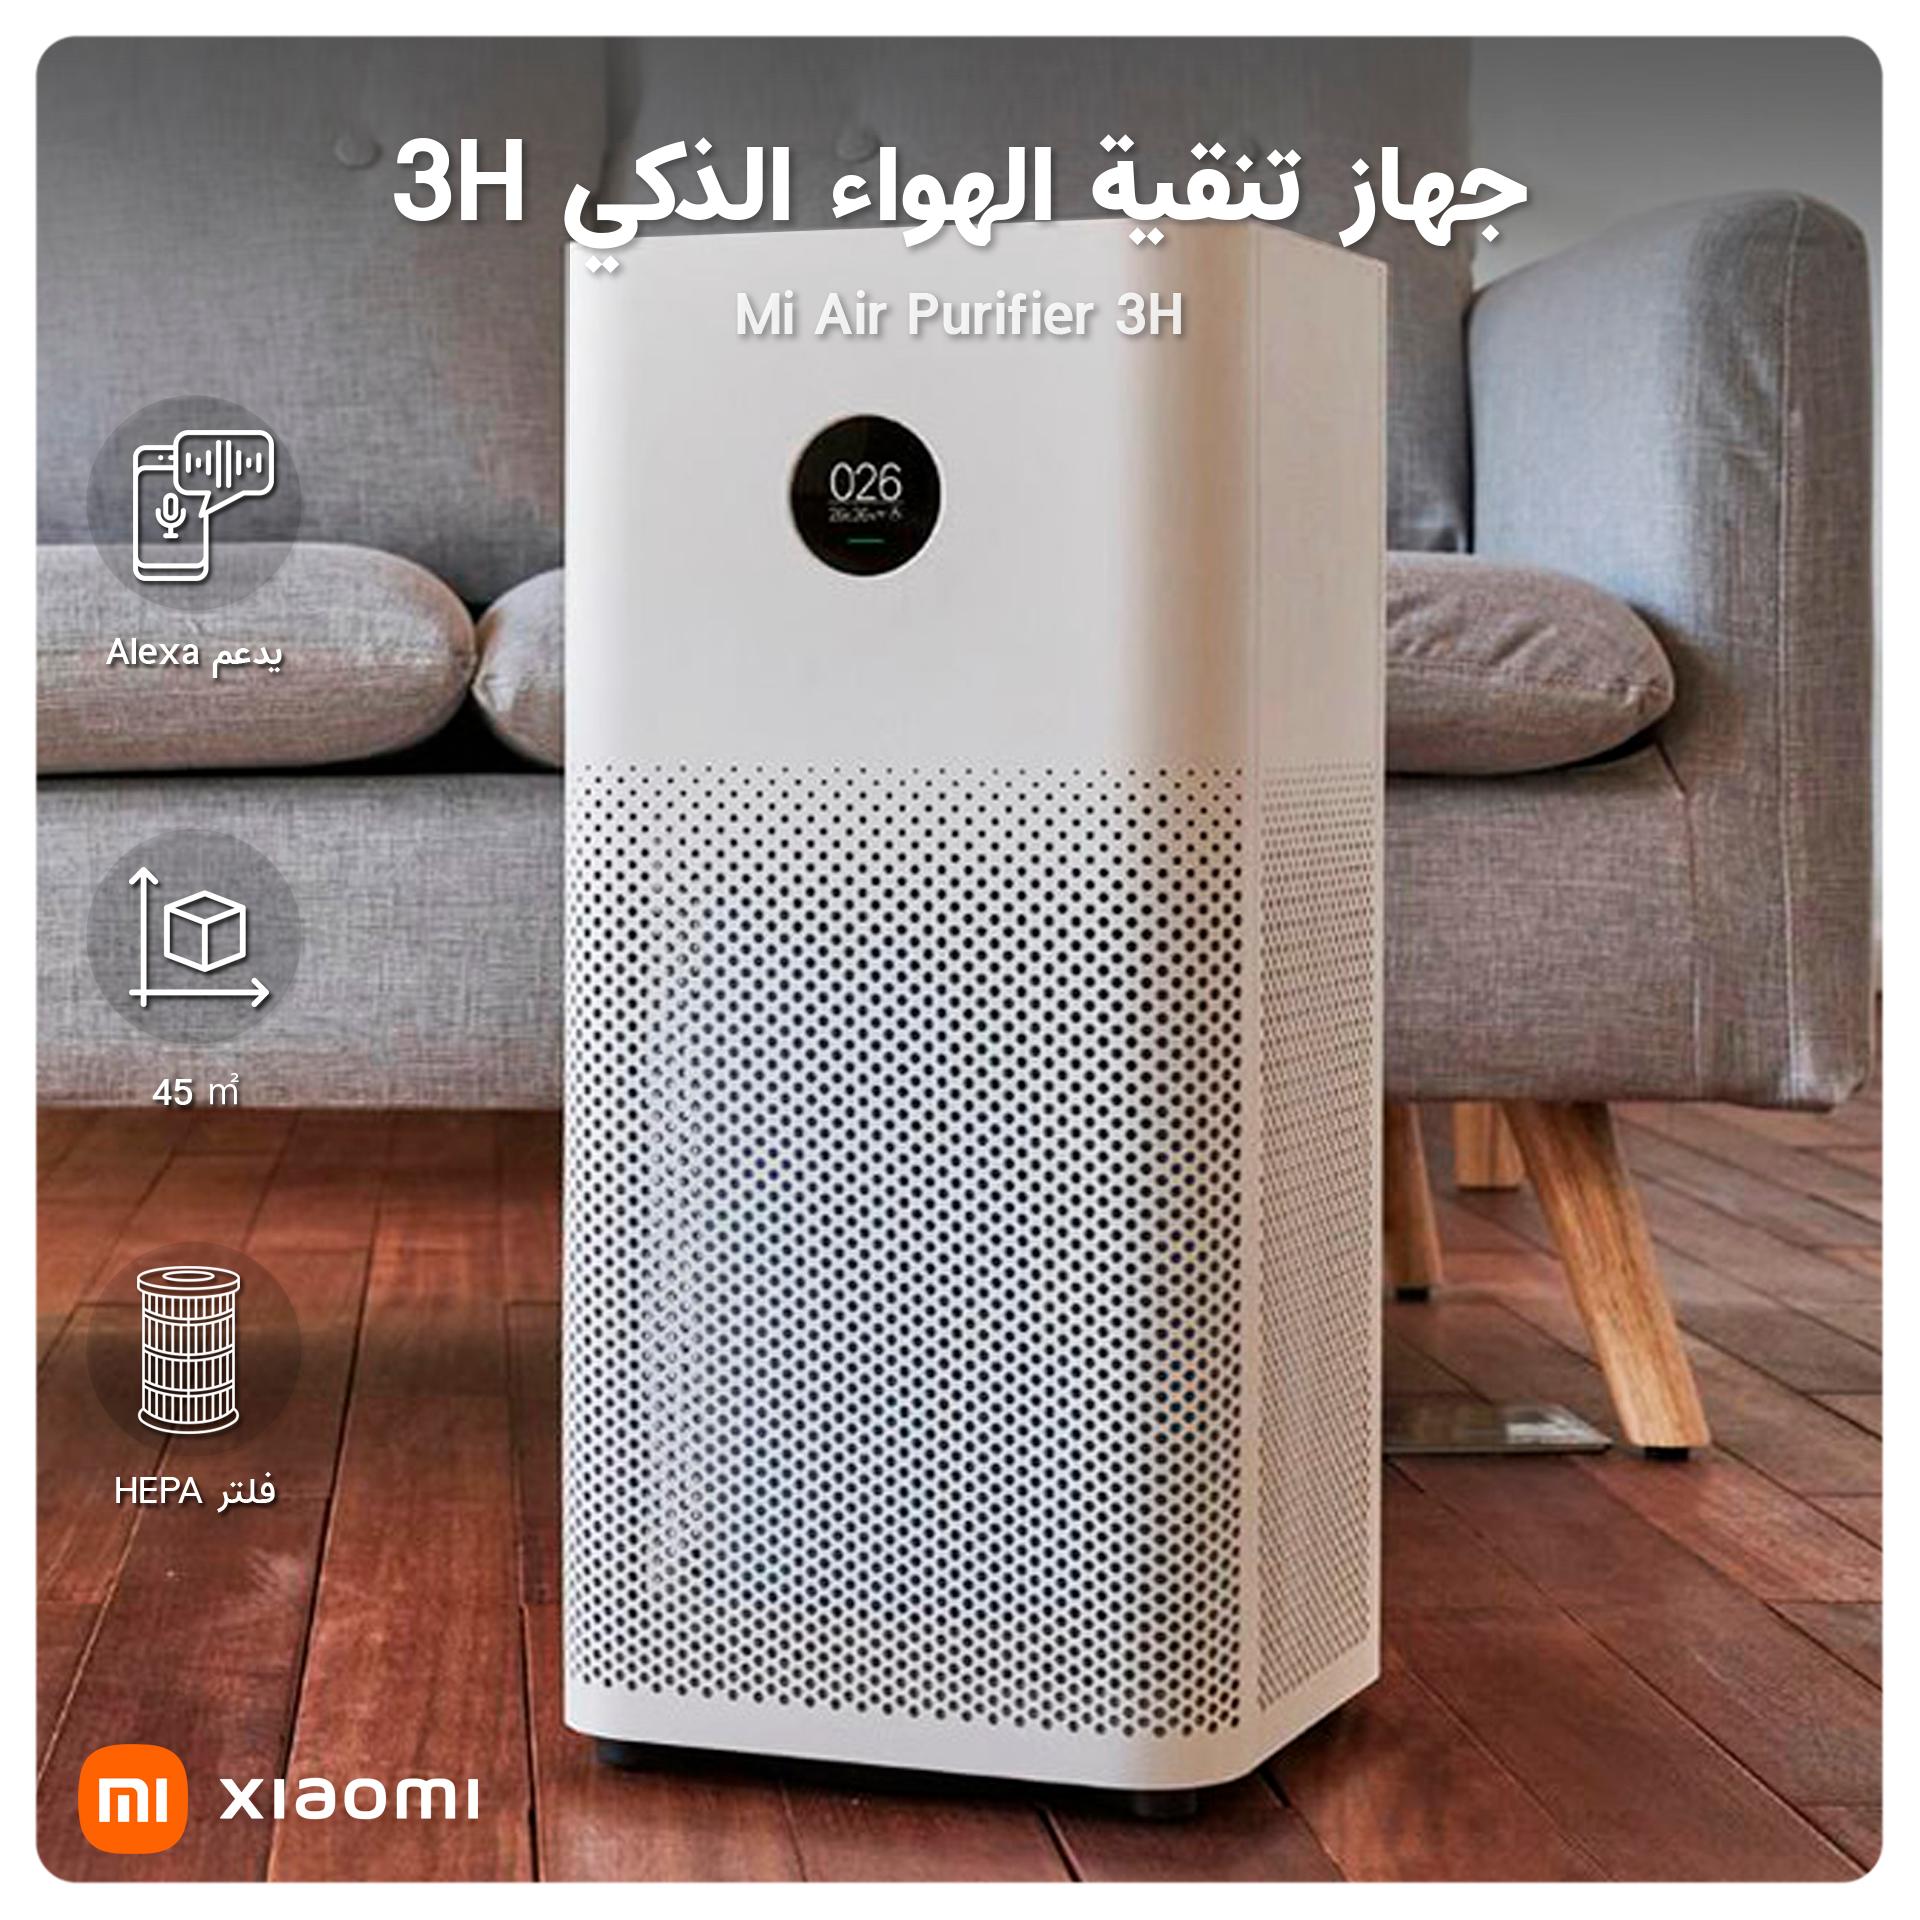 Xiaomi mi air purifier 3h